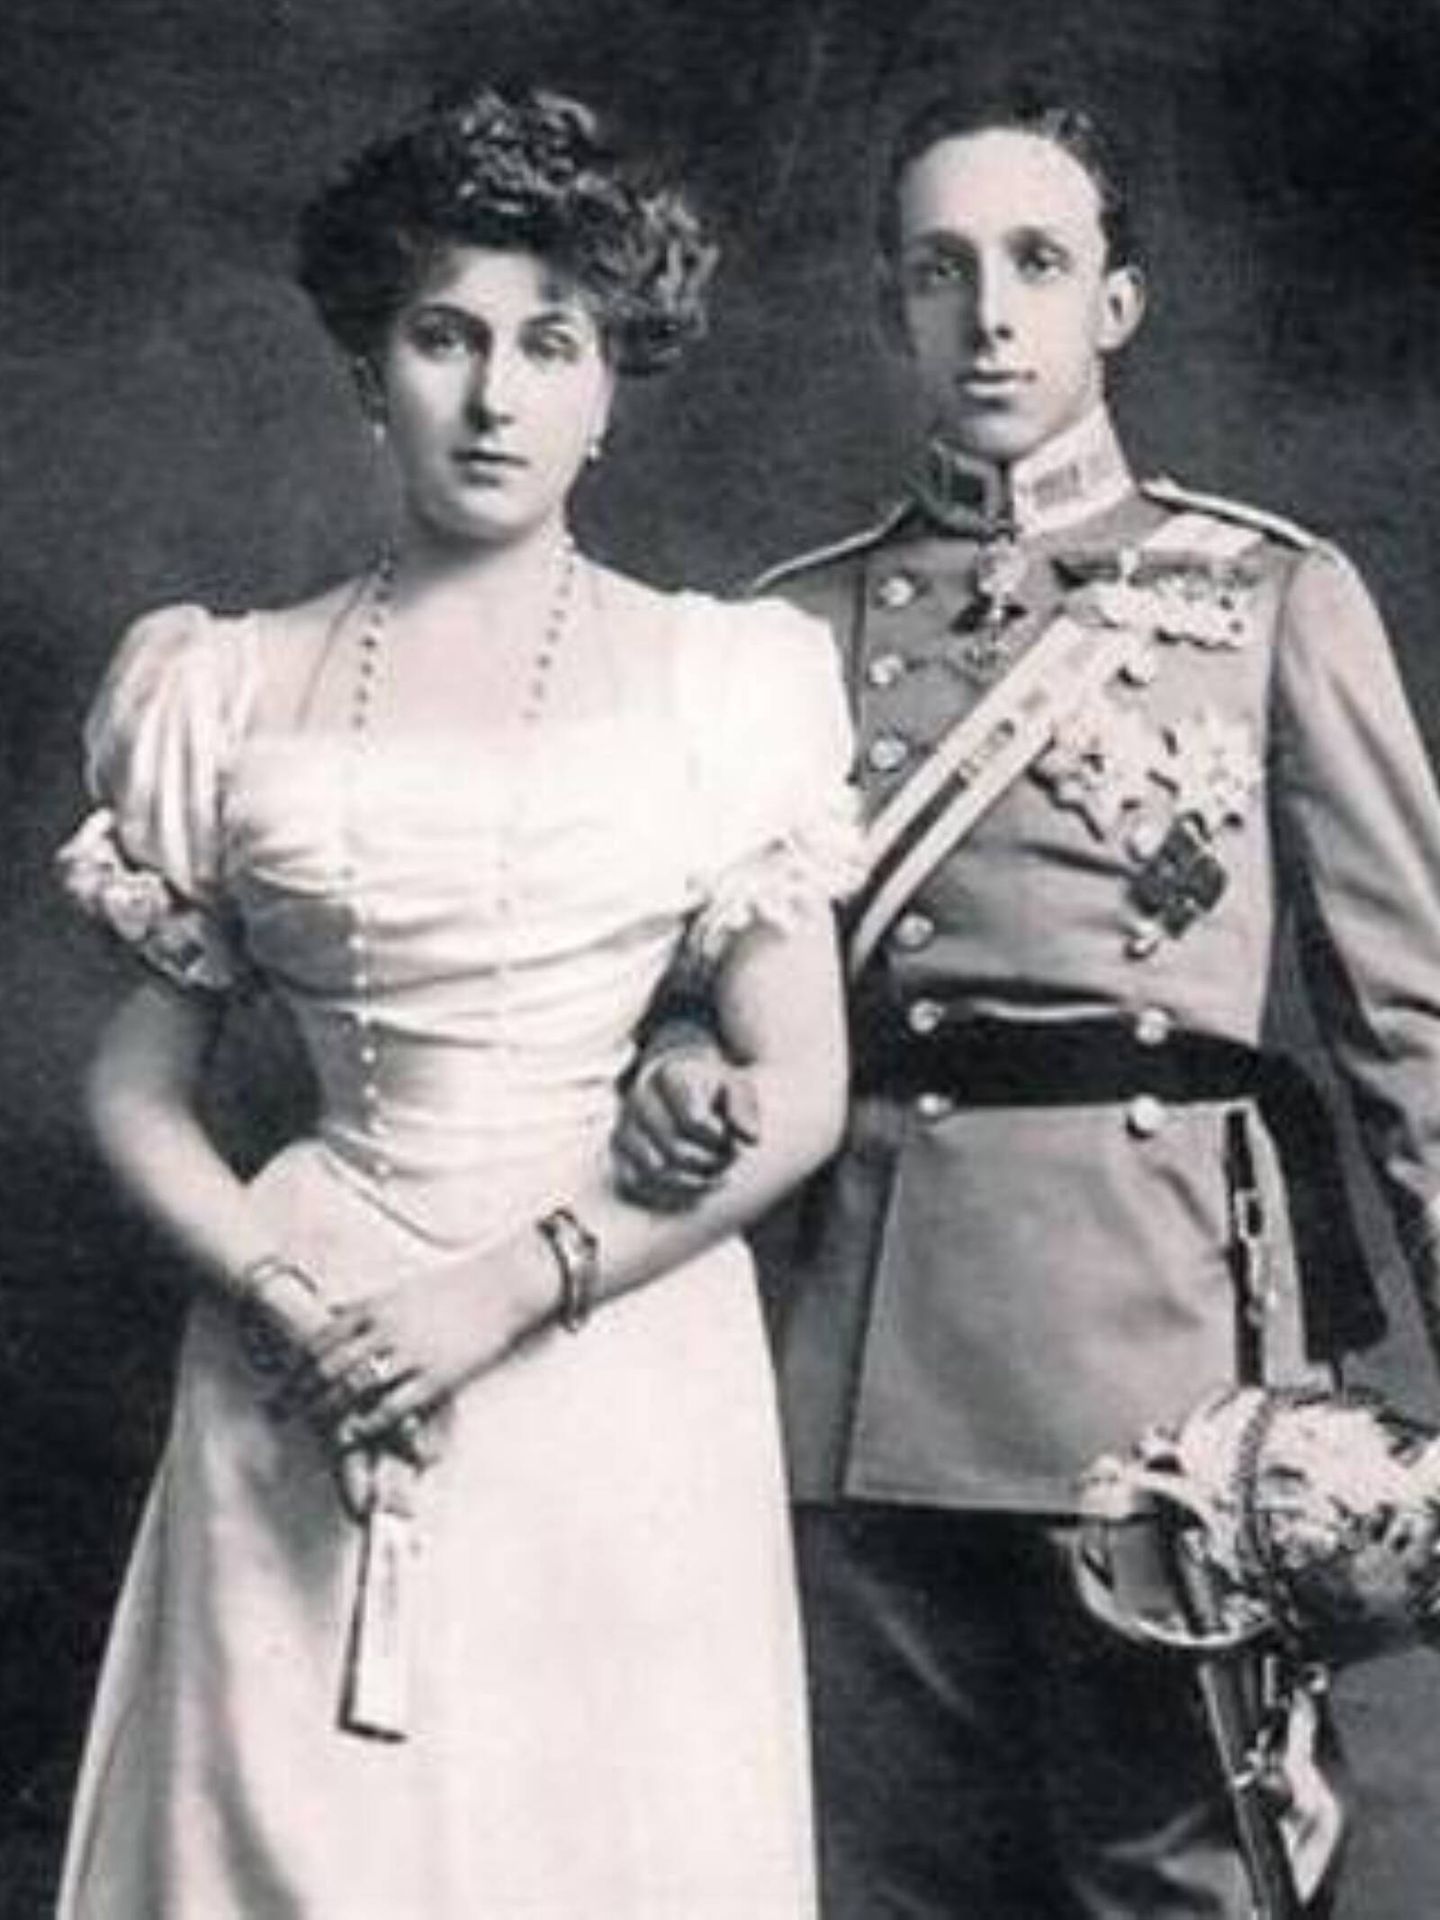 El rey Alfonso XIII, junto a la reina Victoria Eugenia en una fotografía. (Imagen de archivo)